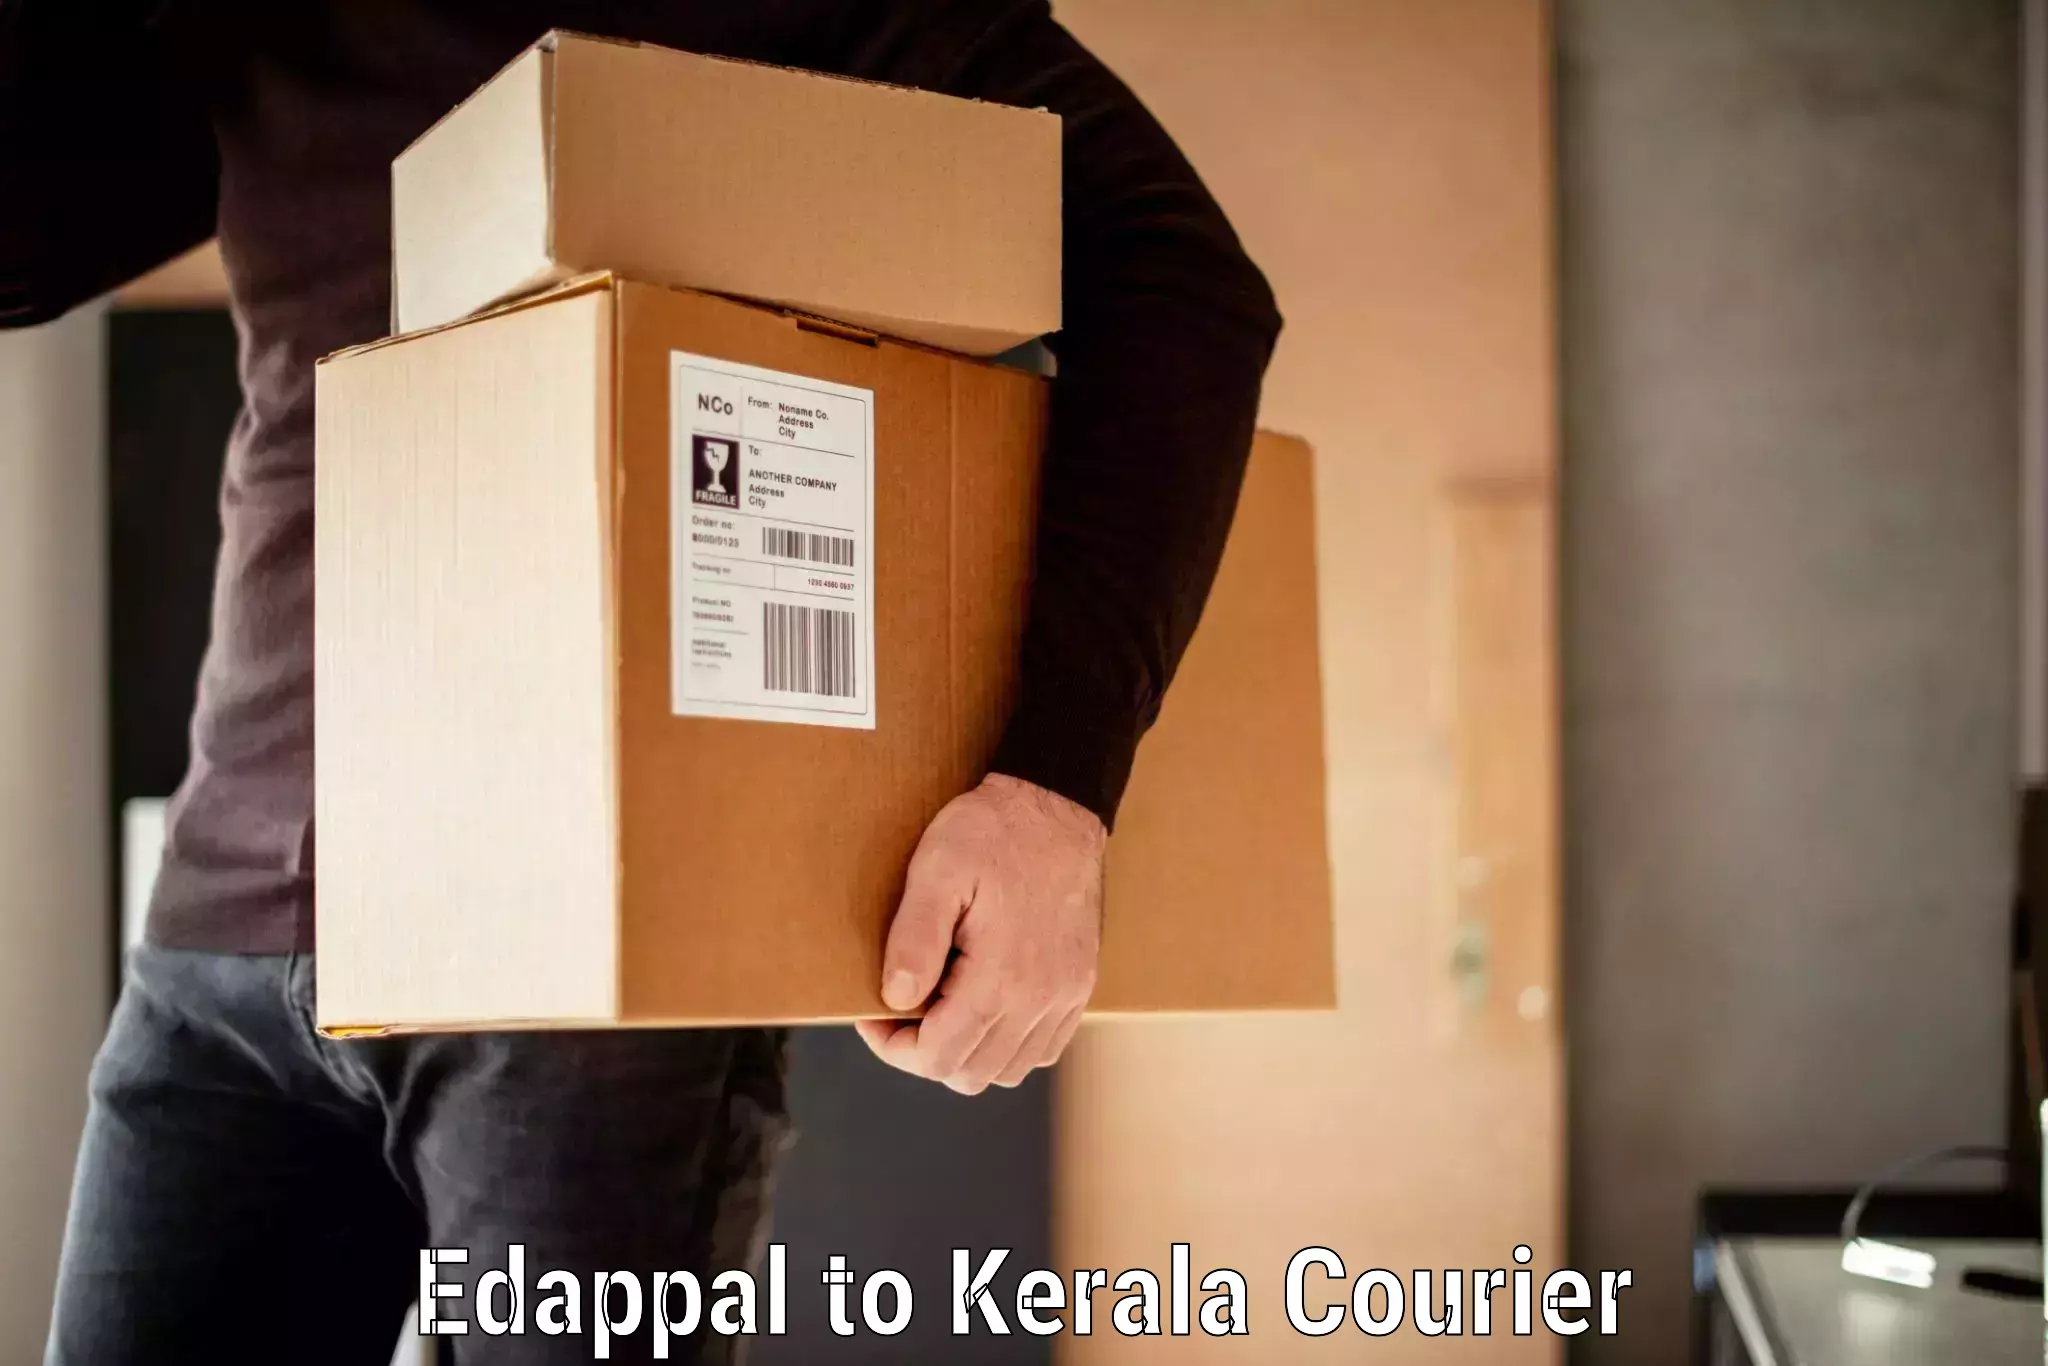 Baggage shipping service Edappal to Kalanjoor